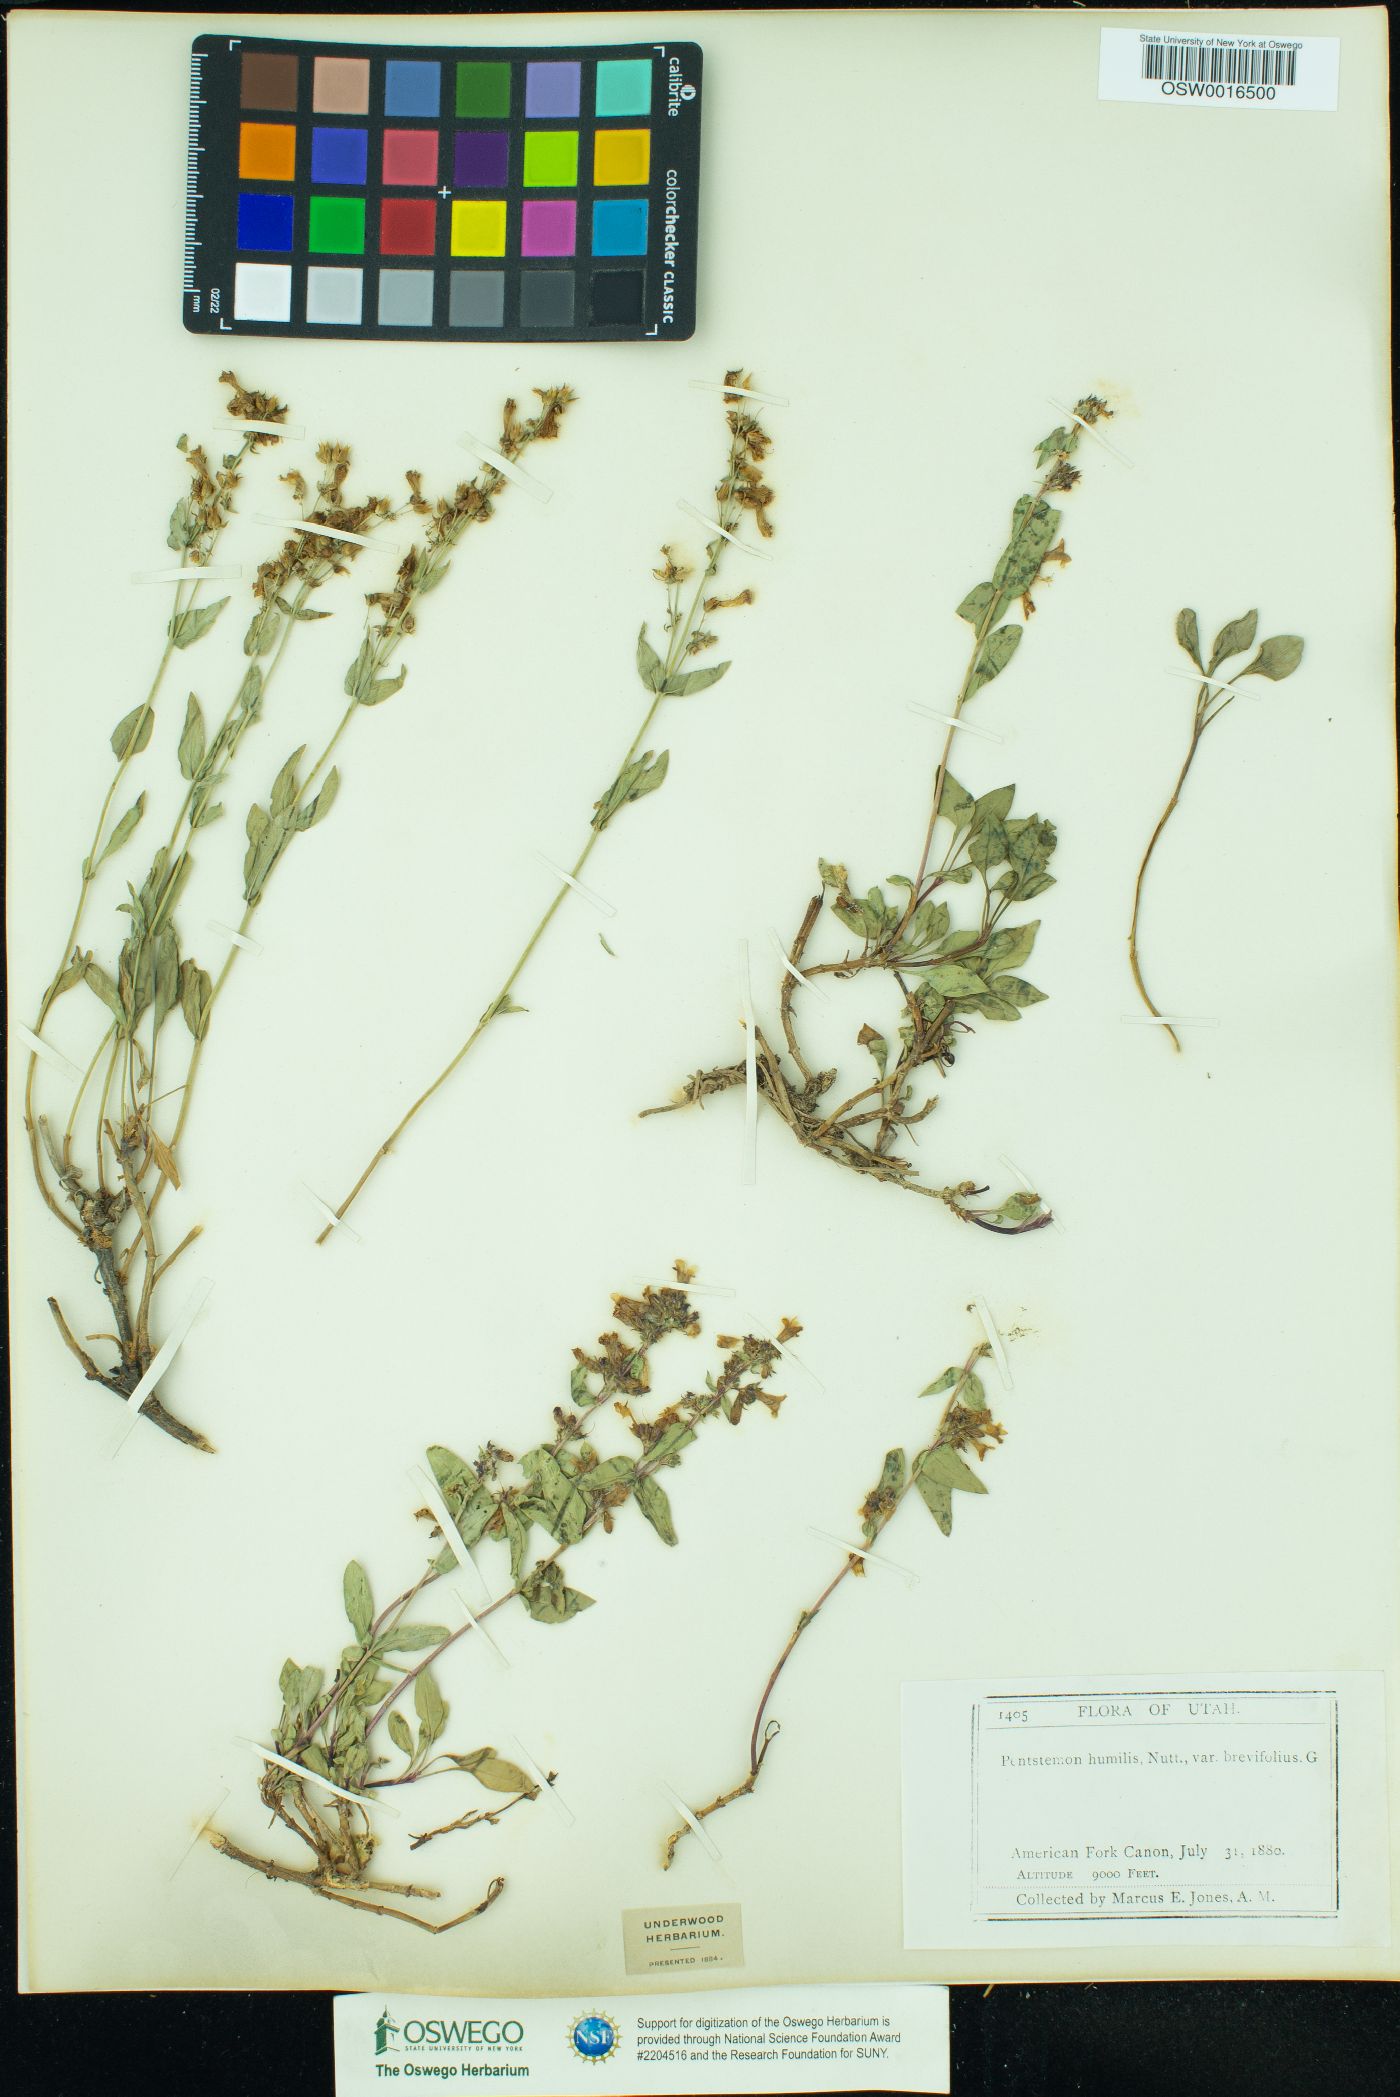 Penstemon humilis ssp. brevifolius image